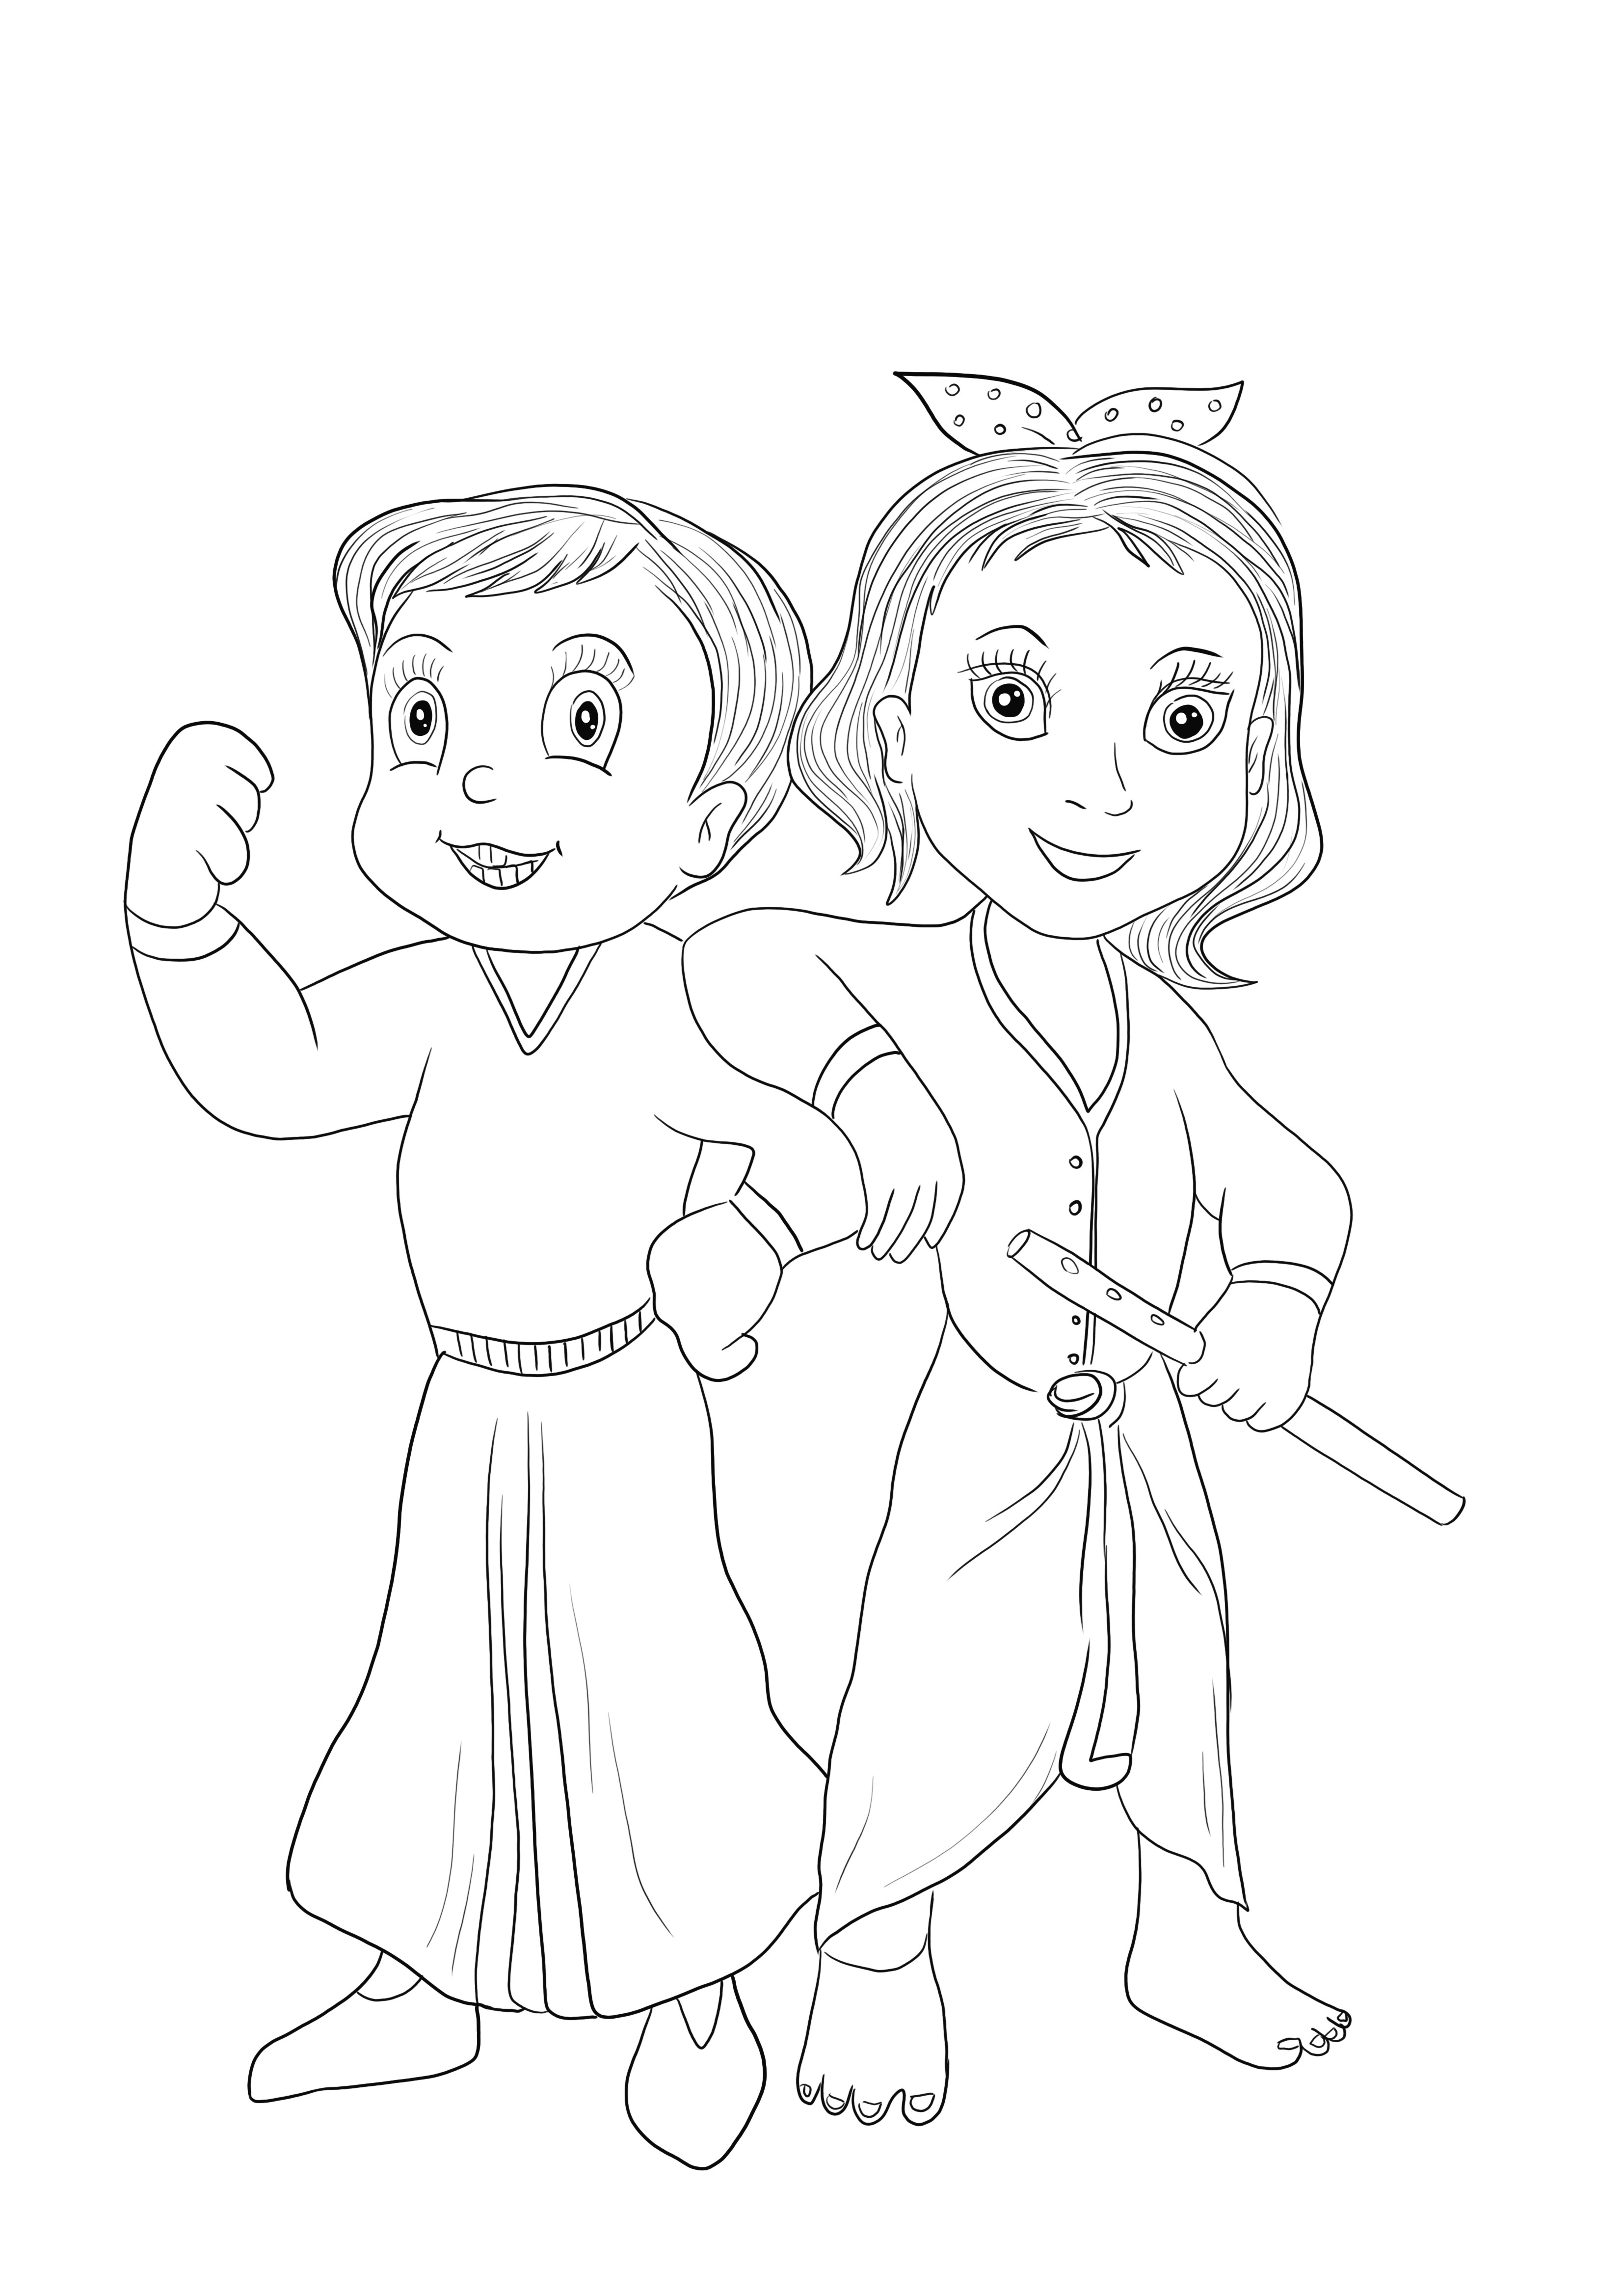 Chhota Bheem et Krishna du jeu Chota Bheem gratuit à télécharger et facile à colorier